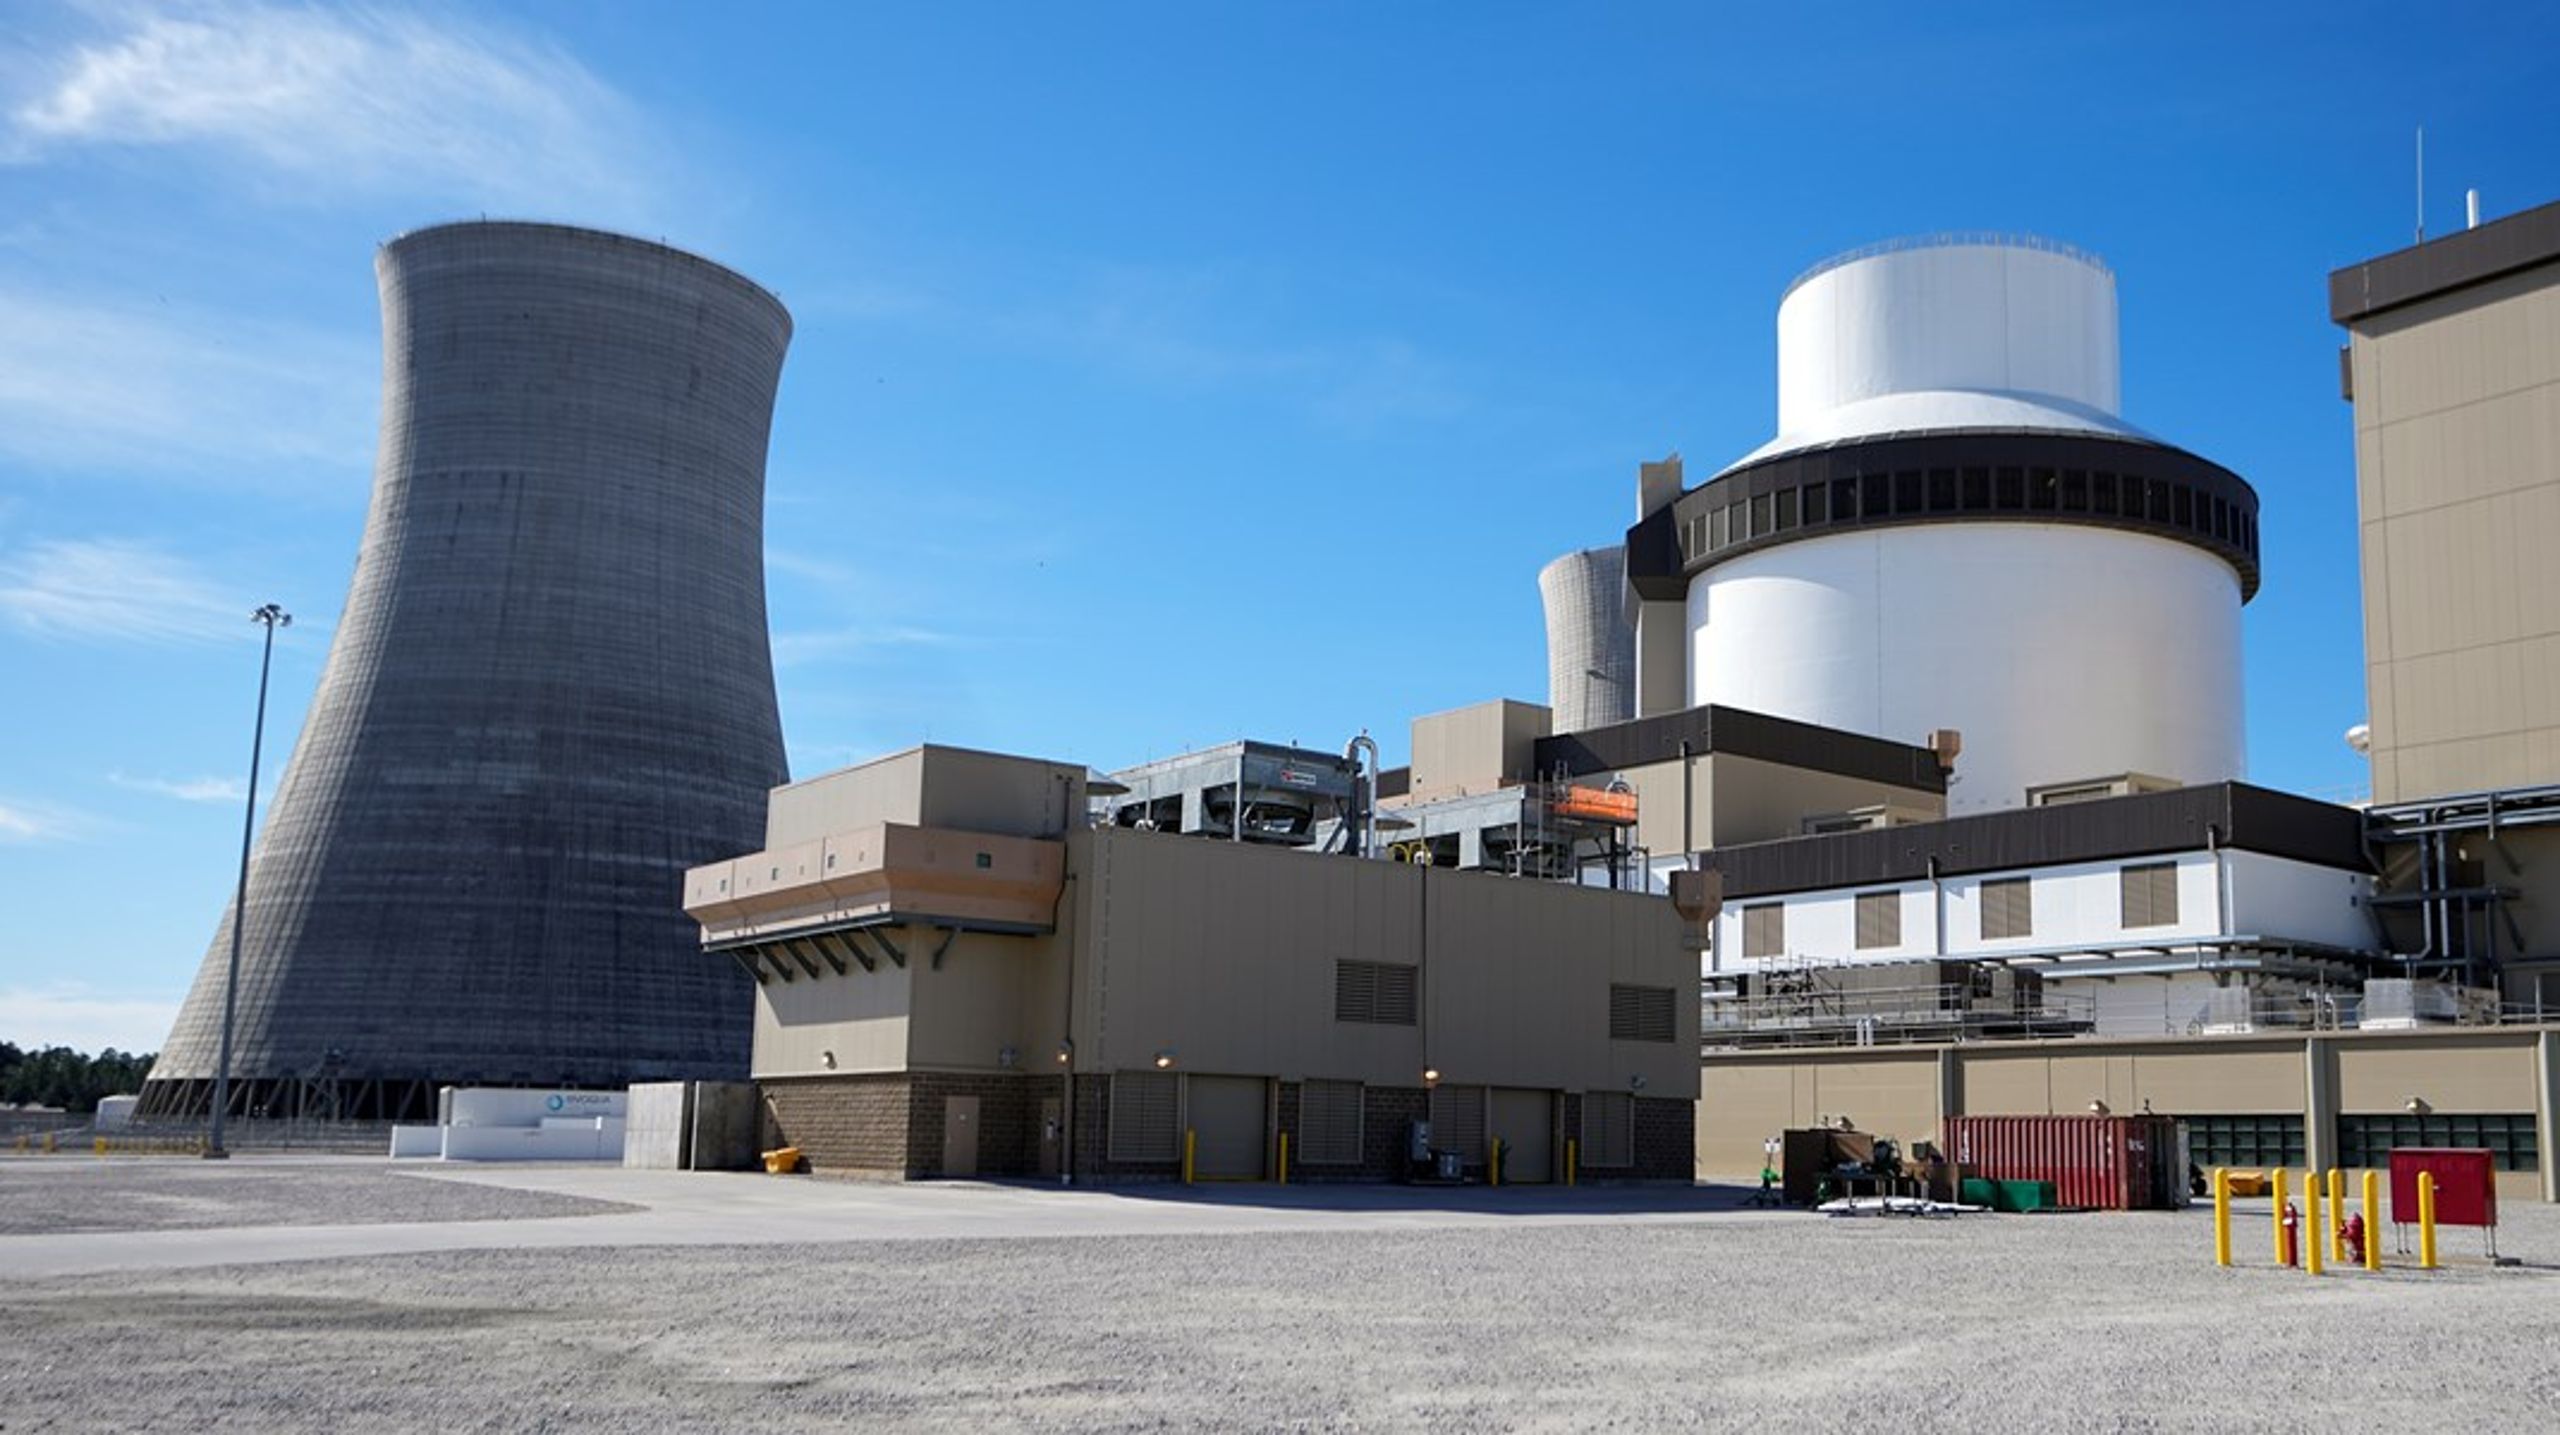 Administrerende direktør Jonny Hesthammer i Norsk Kjernekraft AS argumenterer for hvorfor Ap og regjeringen bør revurdere sitt syn på kjernekraft. Bildet er av et nytt kjernekraftanlegg fra Georgia i USA.